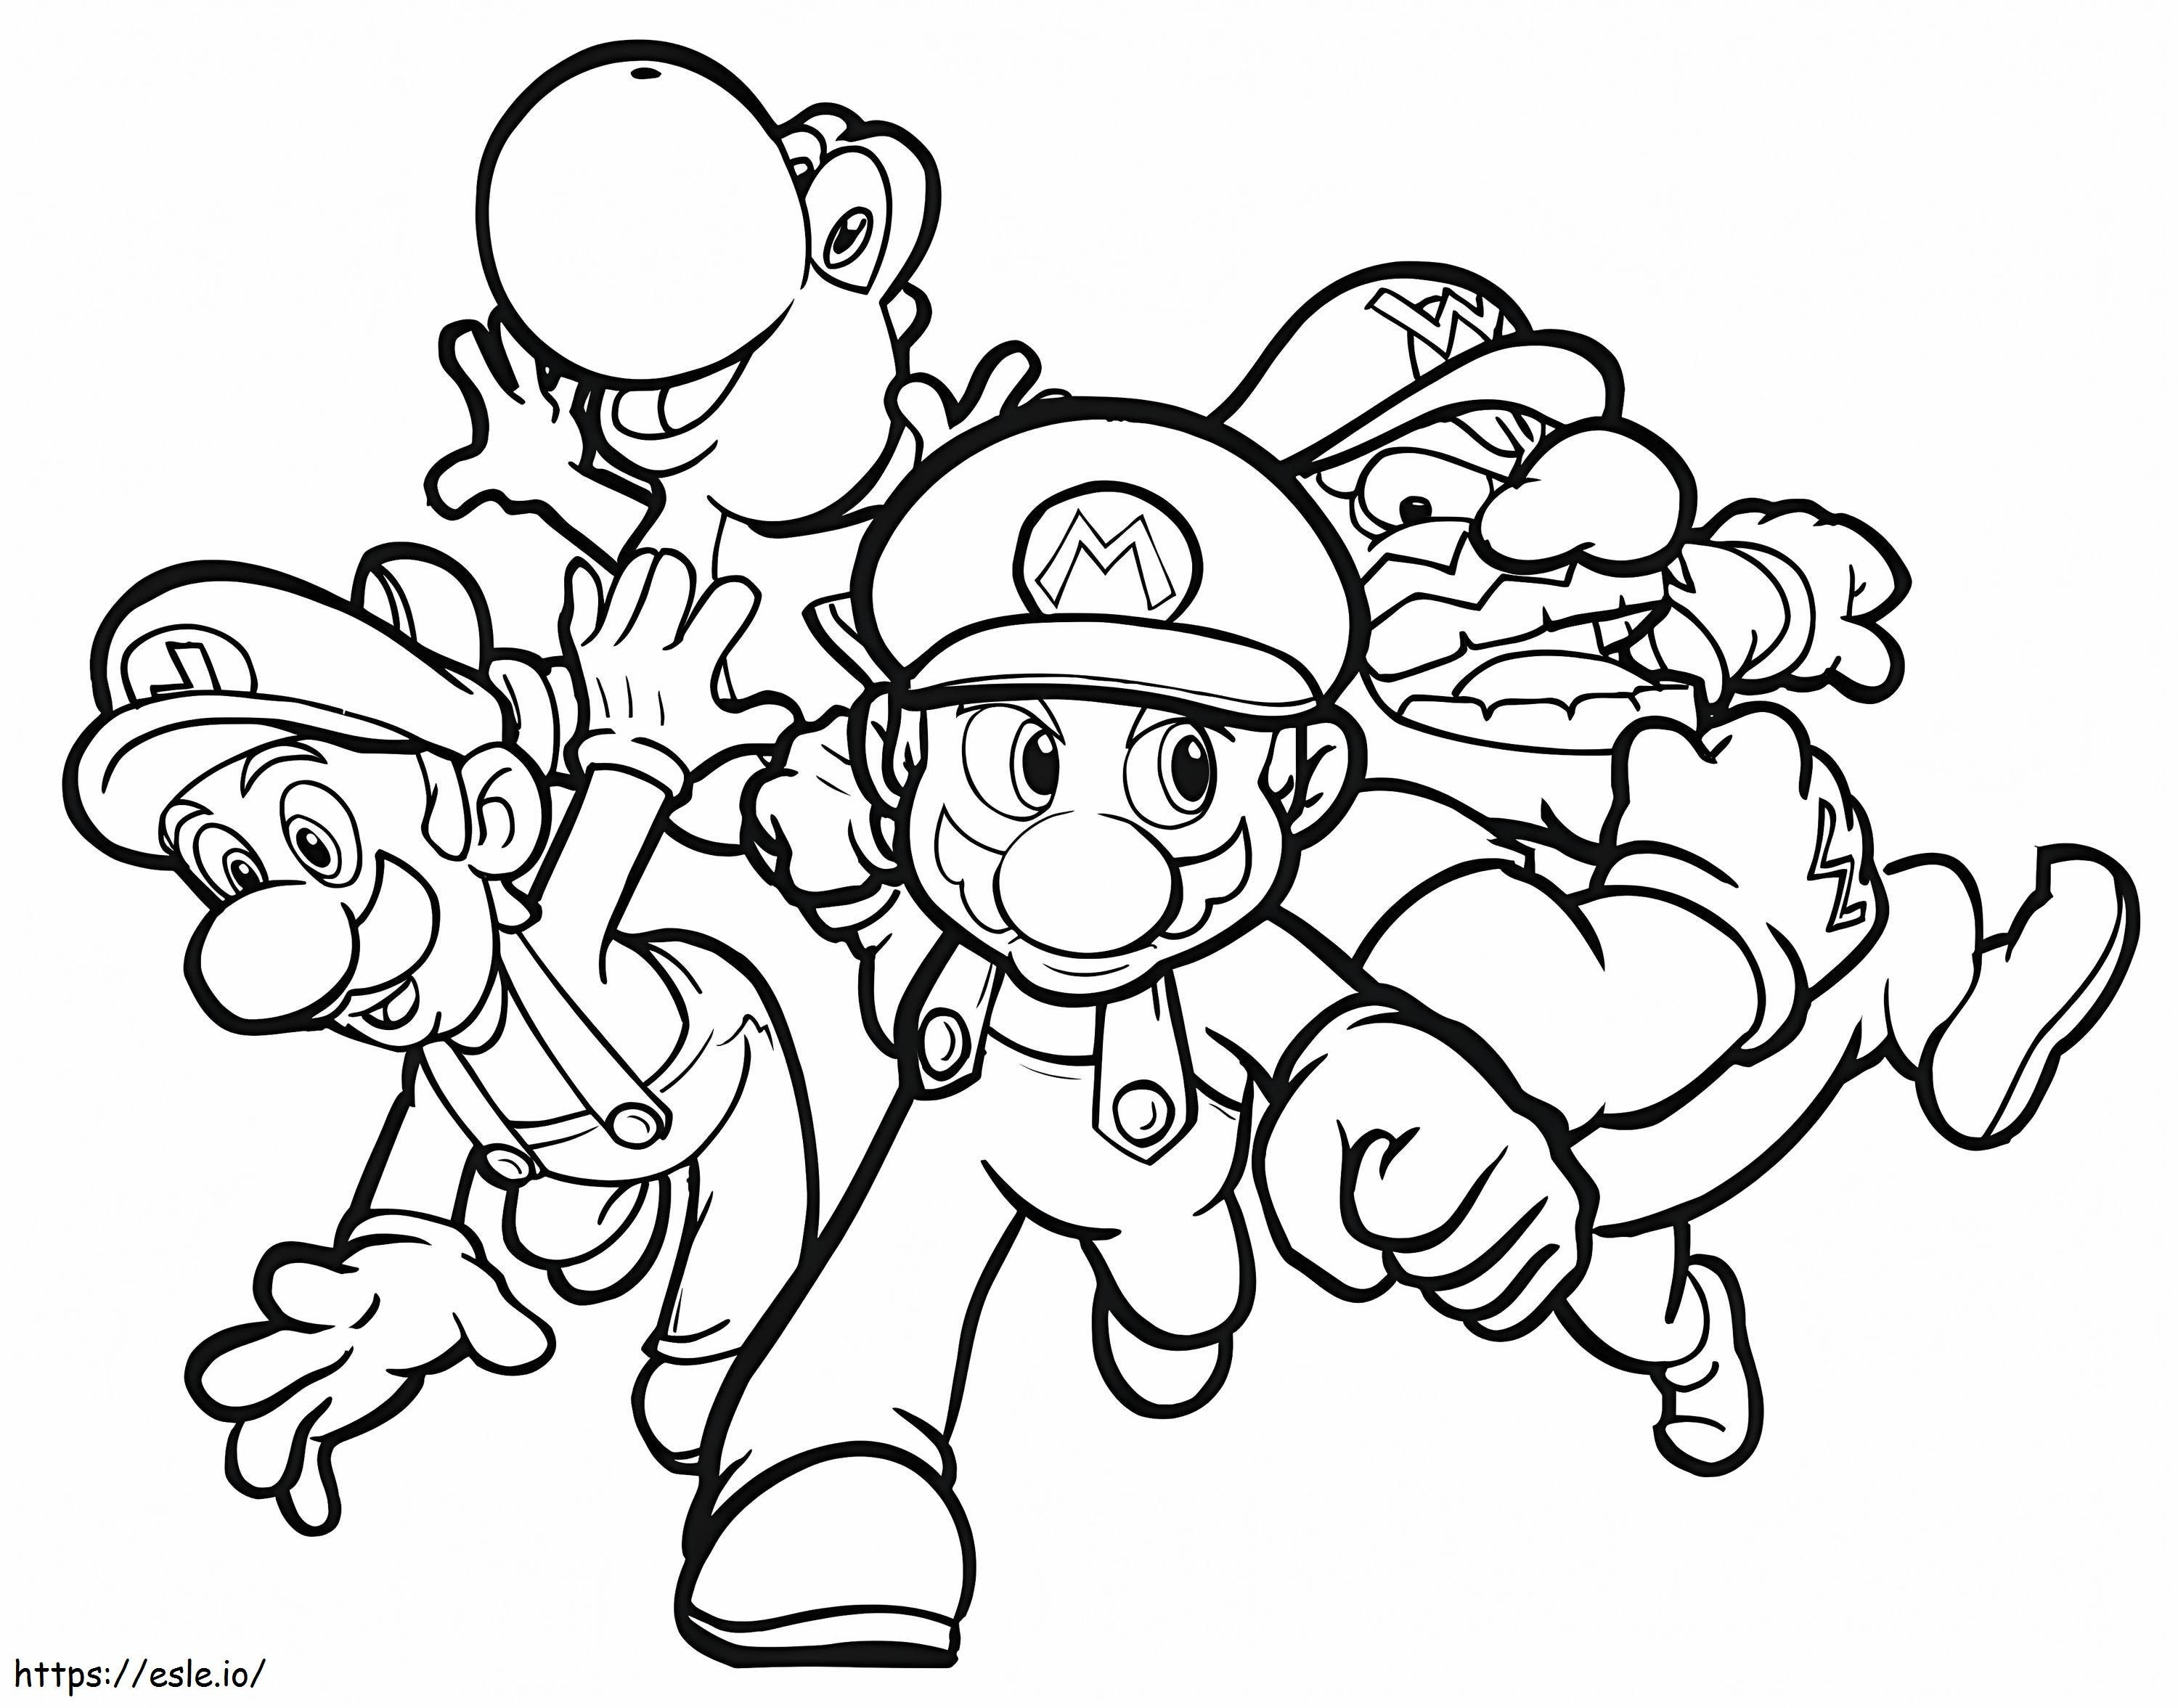 Personajes de Mario 1 para colorear